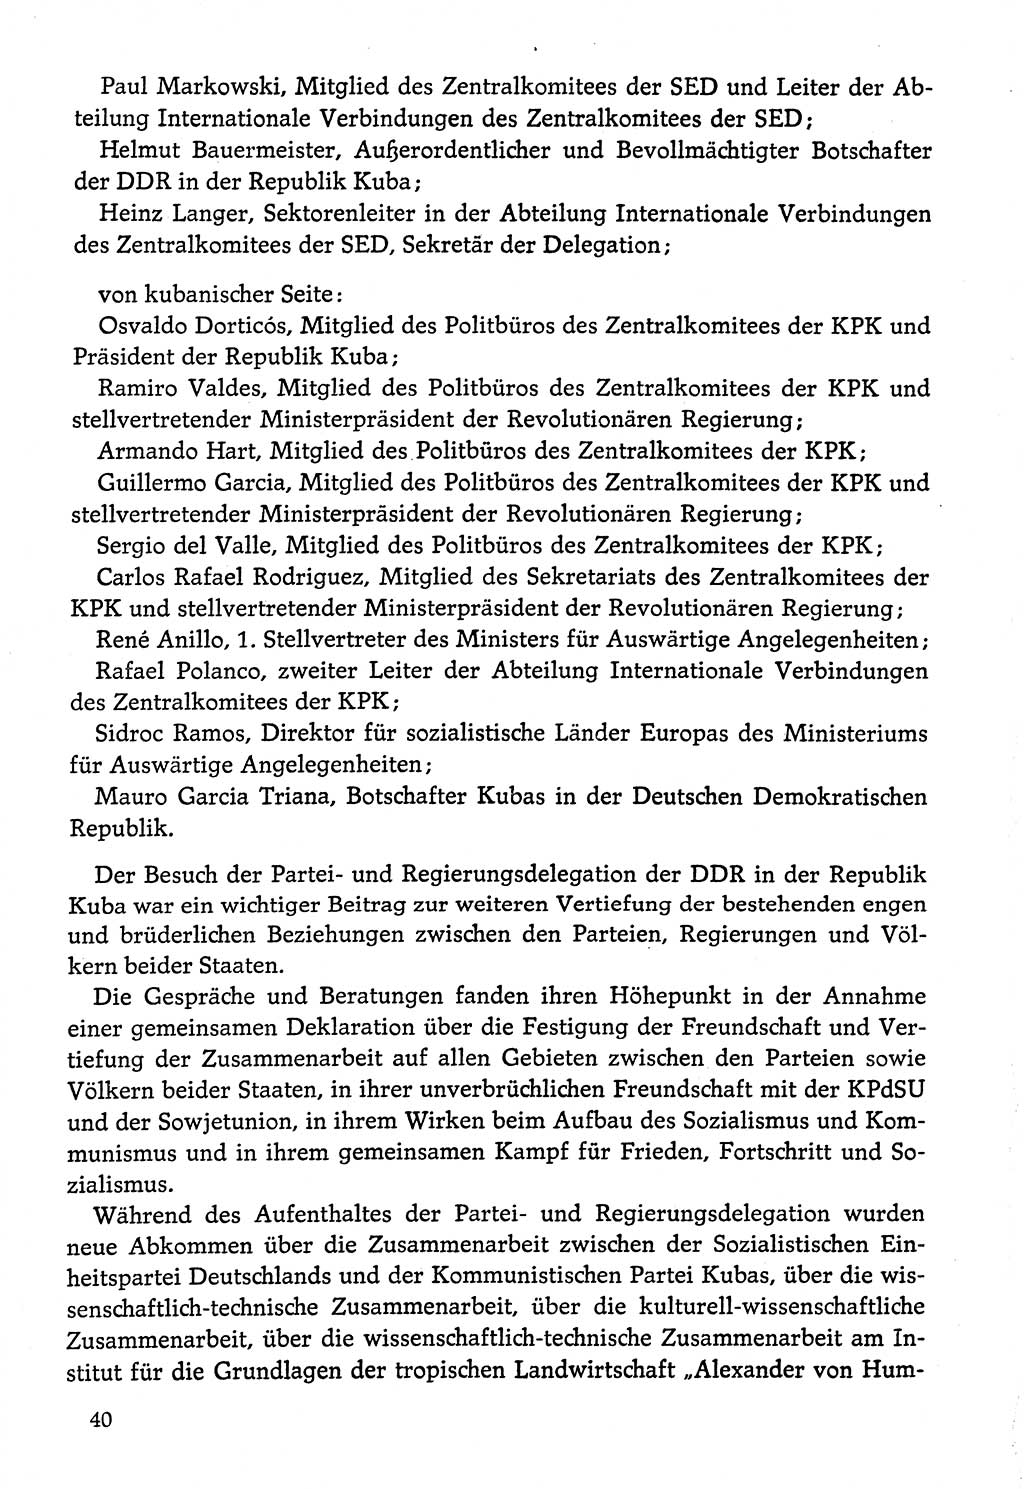 Dokumente der Sozialistischen Einheitspartei Deutschlands (SED) [Deutsche Demokratische Republik (DDR)] 1974-1975, Seite 40 (Dok. SED DDR 1978, Bd. ⅩⅤ, S. 40)